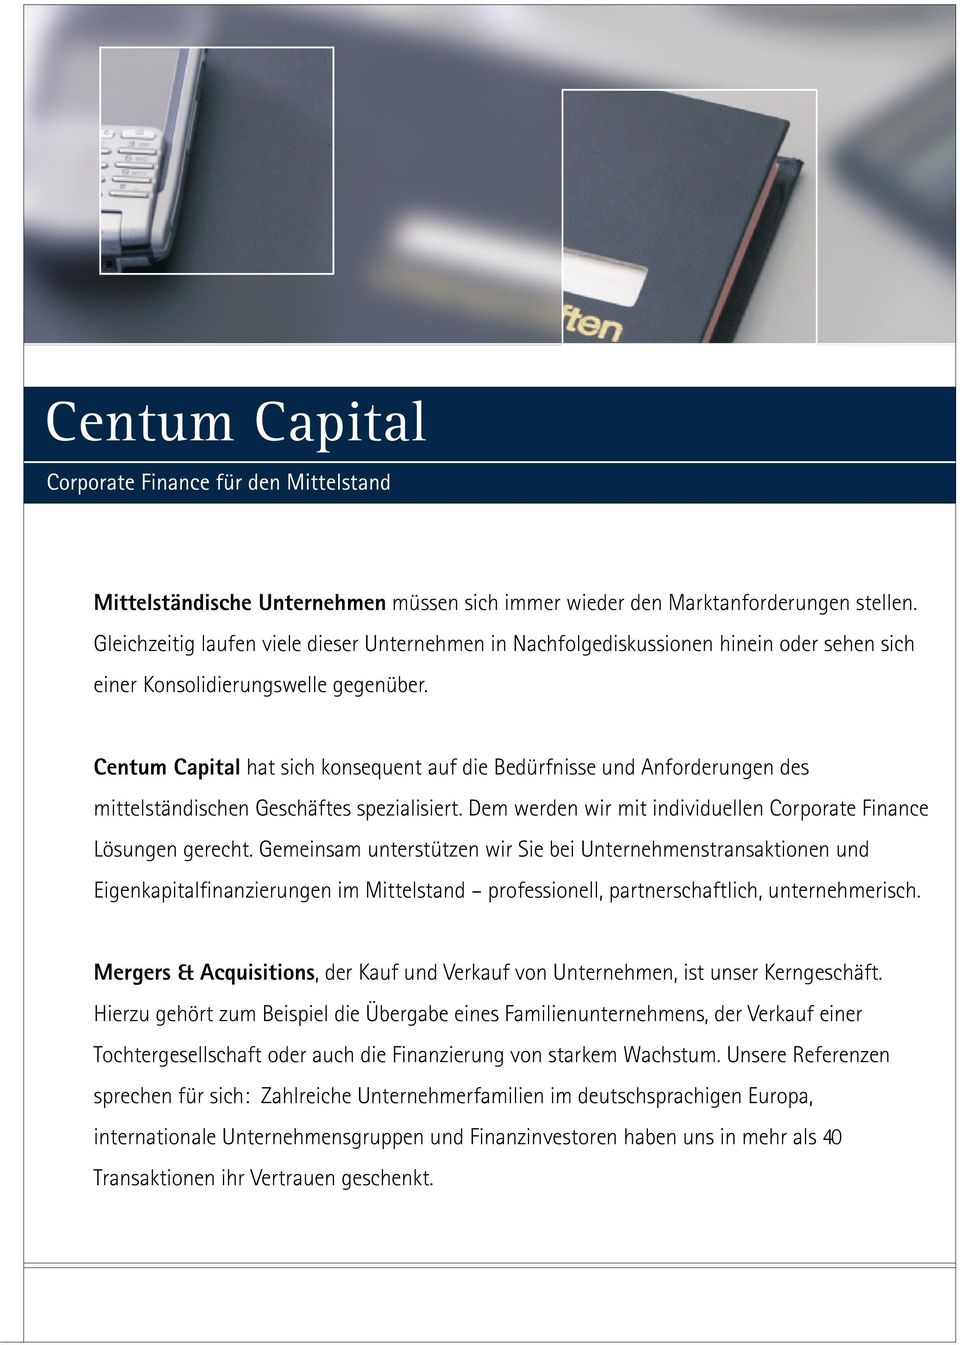 Centum Capital hat sich konsequent auf die Bedürfnisse und Anforderungen des mittelständischen Geschäftes spezialisiert. Dem werden wir mit individuellen Corporate Finance Lösungen gerecht.